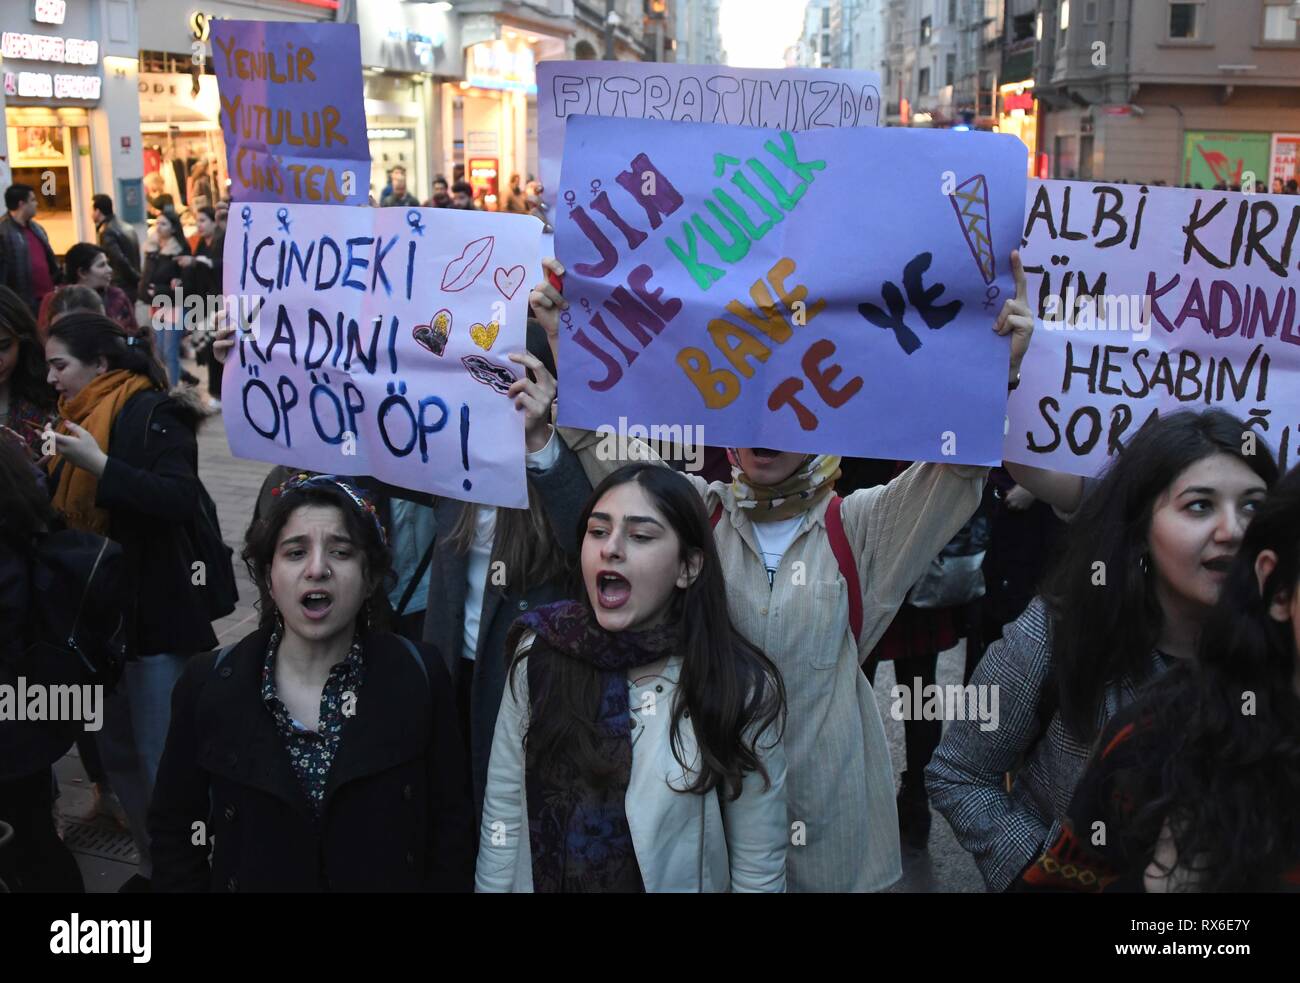 Estambul, Turquía. 8 de Mar, 2019. Las mujeres tomar parte en una protesta contra la violencia machista en la calle Istiklal de Estambul, Turquía, el 8 de marzo de 2019. La policía turca dispararon gases lacrimógenos y balas de goma para dispersar a las mujeres que protestaban contra la violencia masculina en el centro de Estambul el viernes por la noche. Crédito: Xu Suhui/Xinhua/Alamy Live News Foto de stock